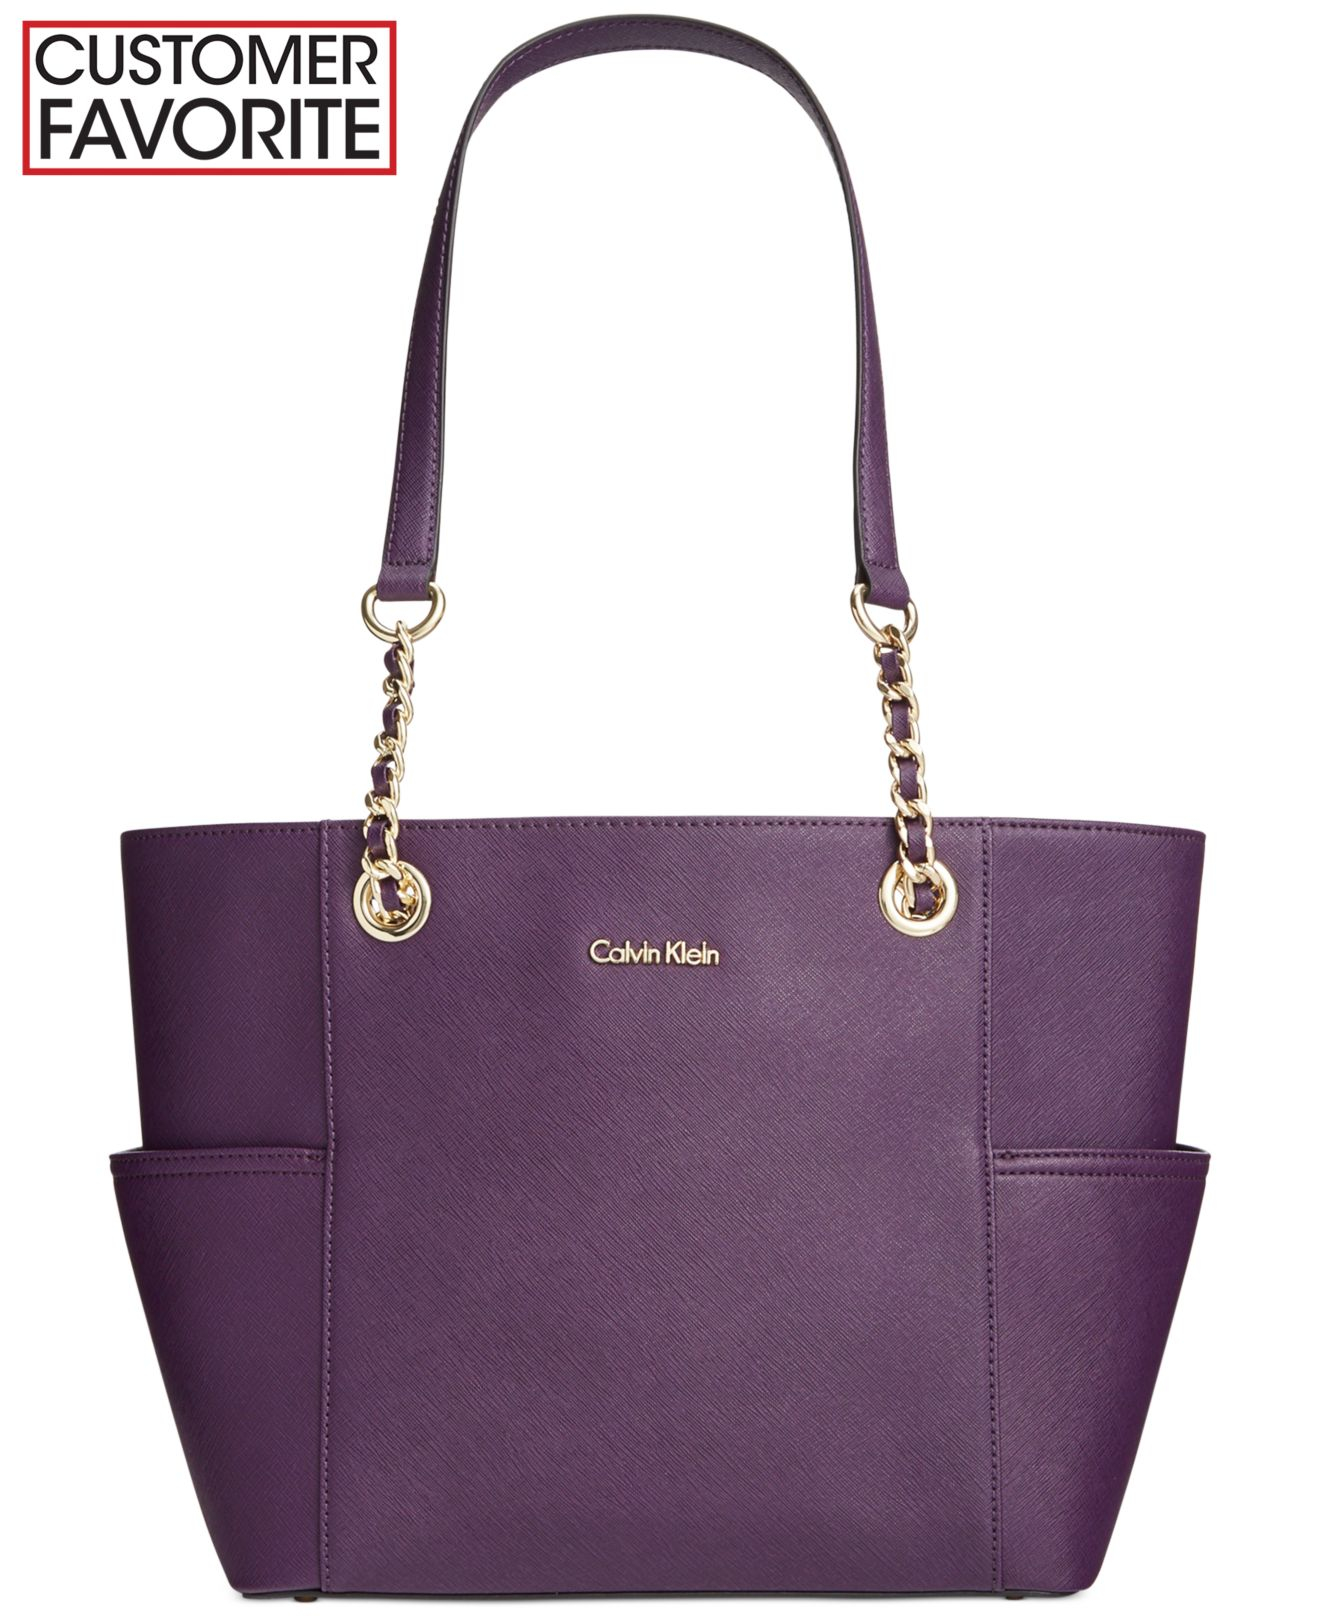 Calvin Klein Saffiano Leather Tote in Dark Taupe (Purple) | Lyst